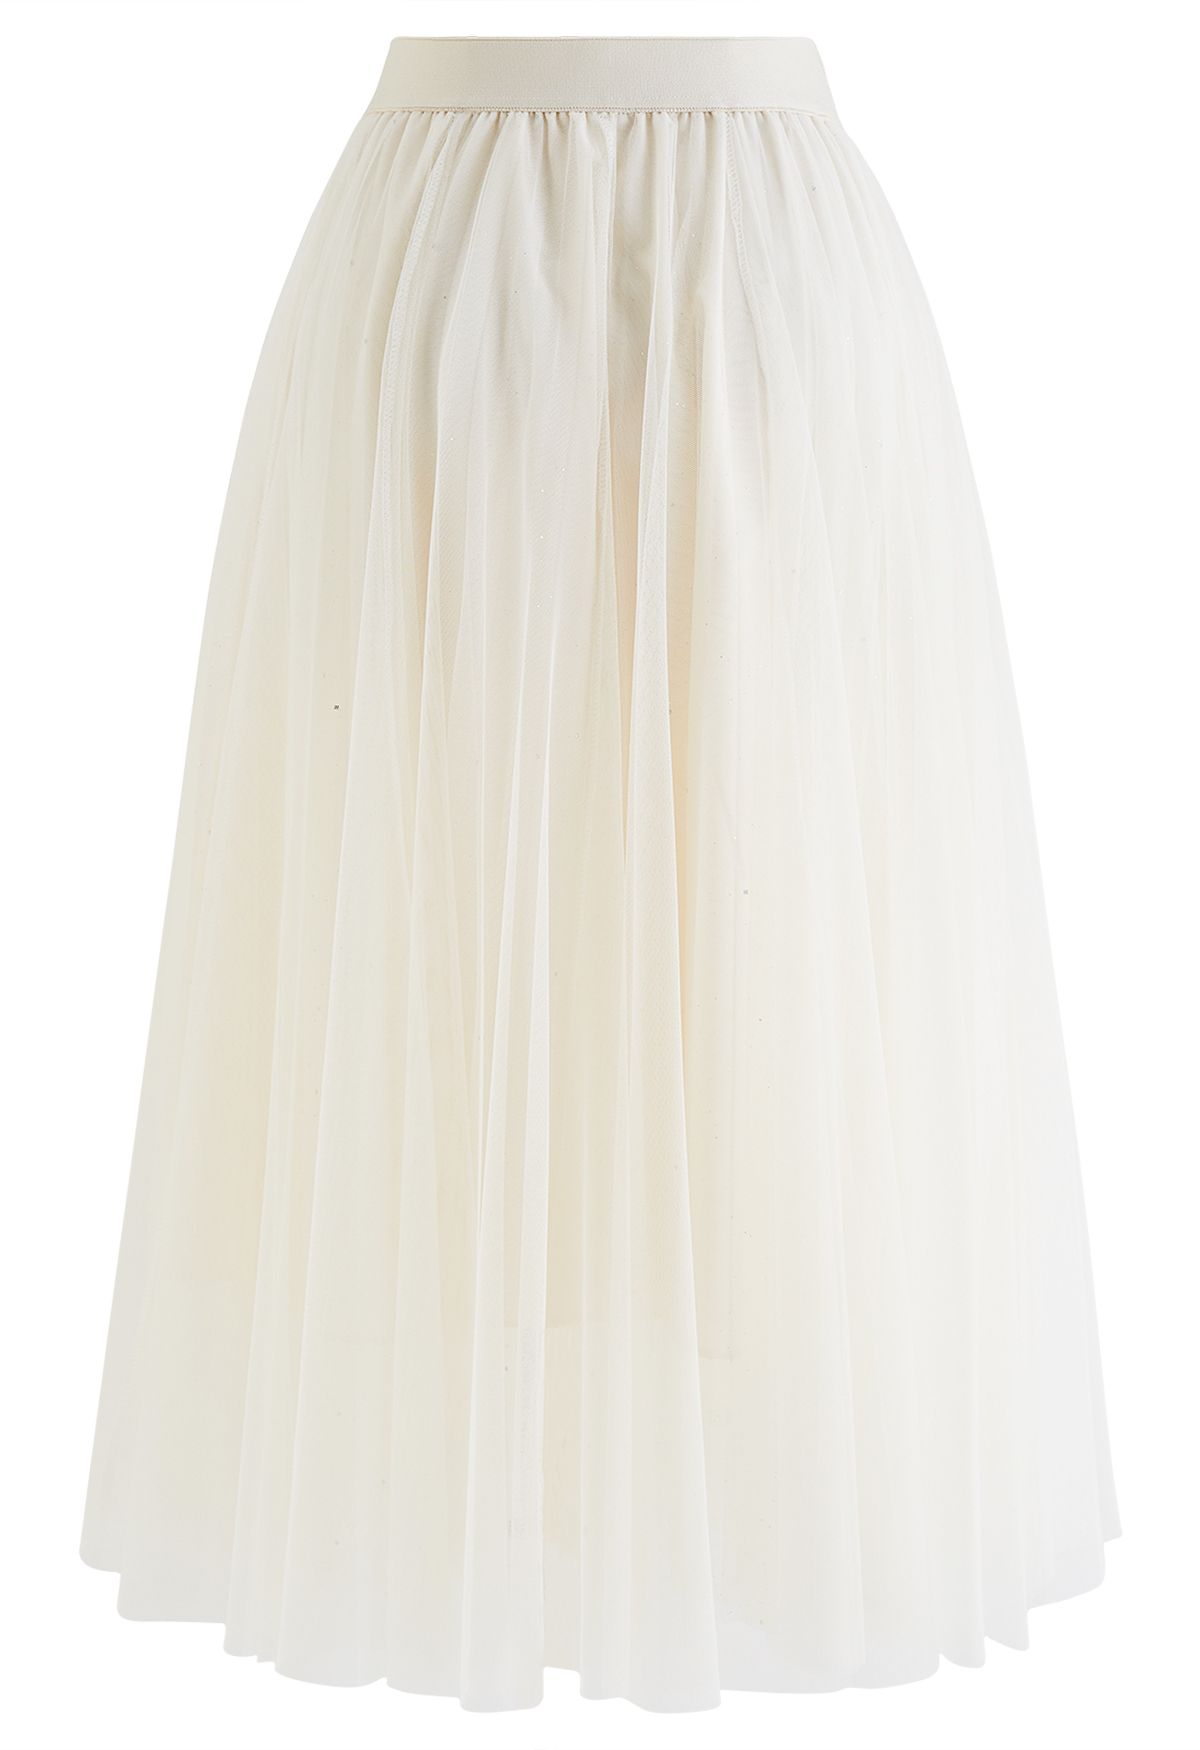 Venus Glitter Mesh Tulle Midi Skirt in Cream